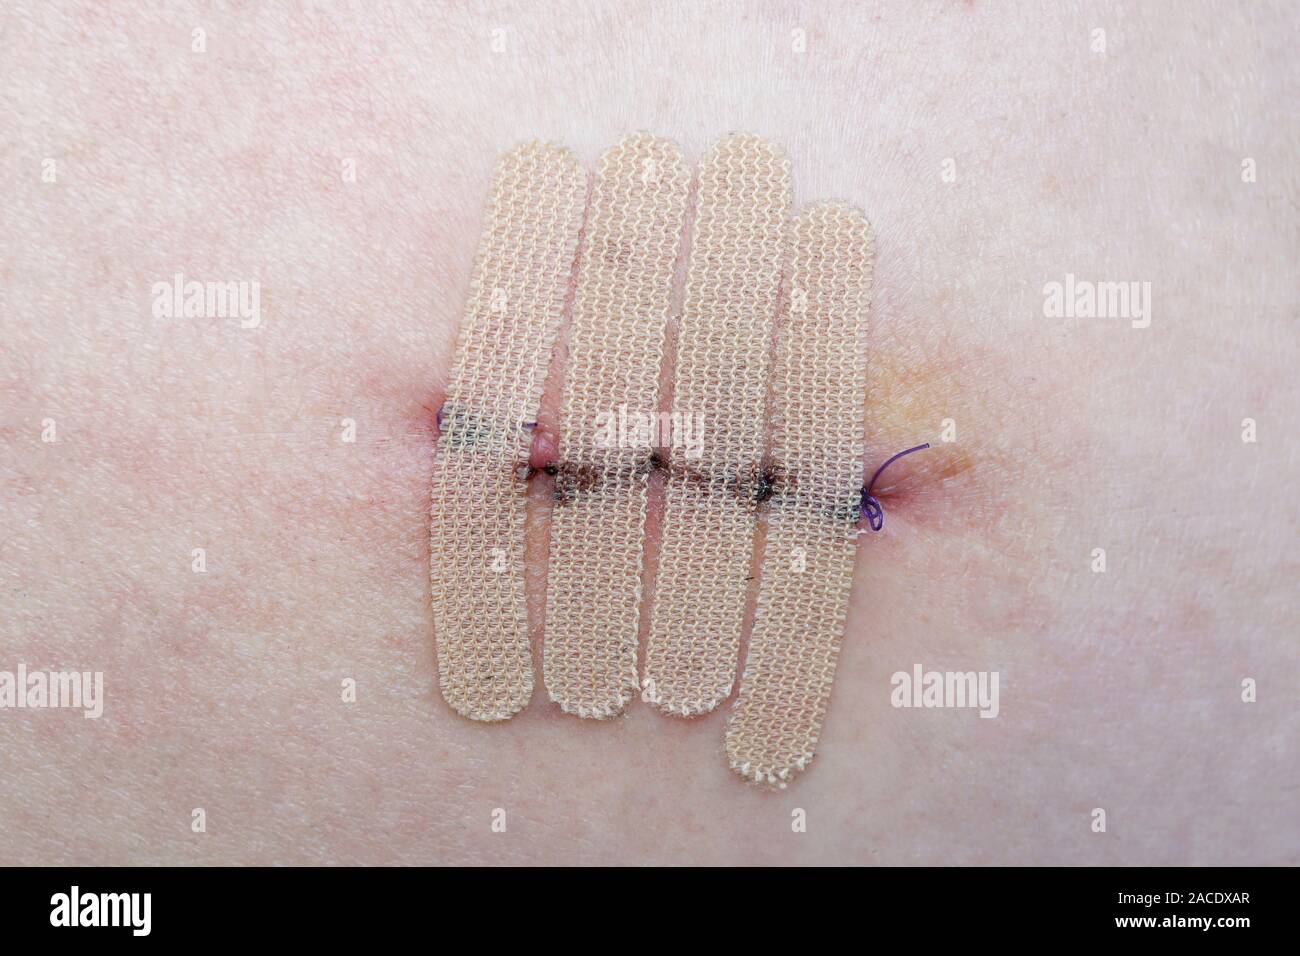 Close-up de la piel humana con sutura y cierre de la herida quirúrgica o tiras de cinta después de mole o biopsia del melanoma Foto de stock